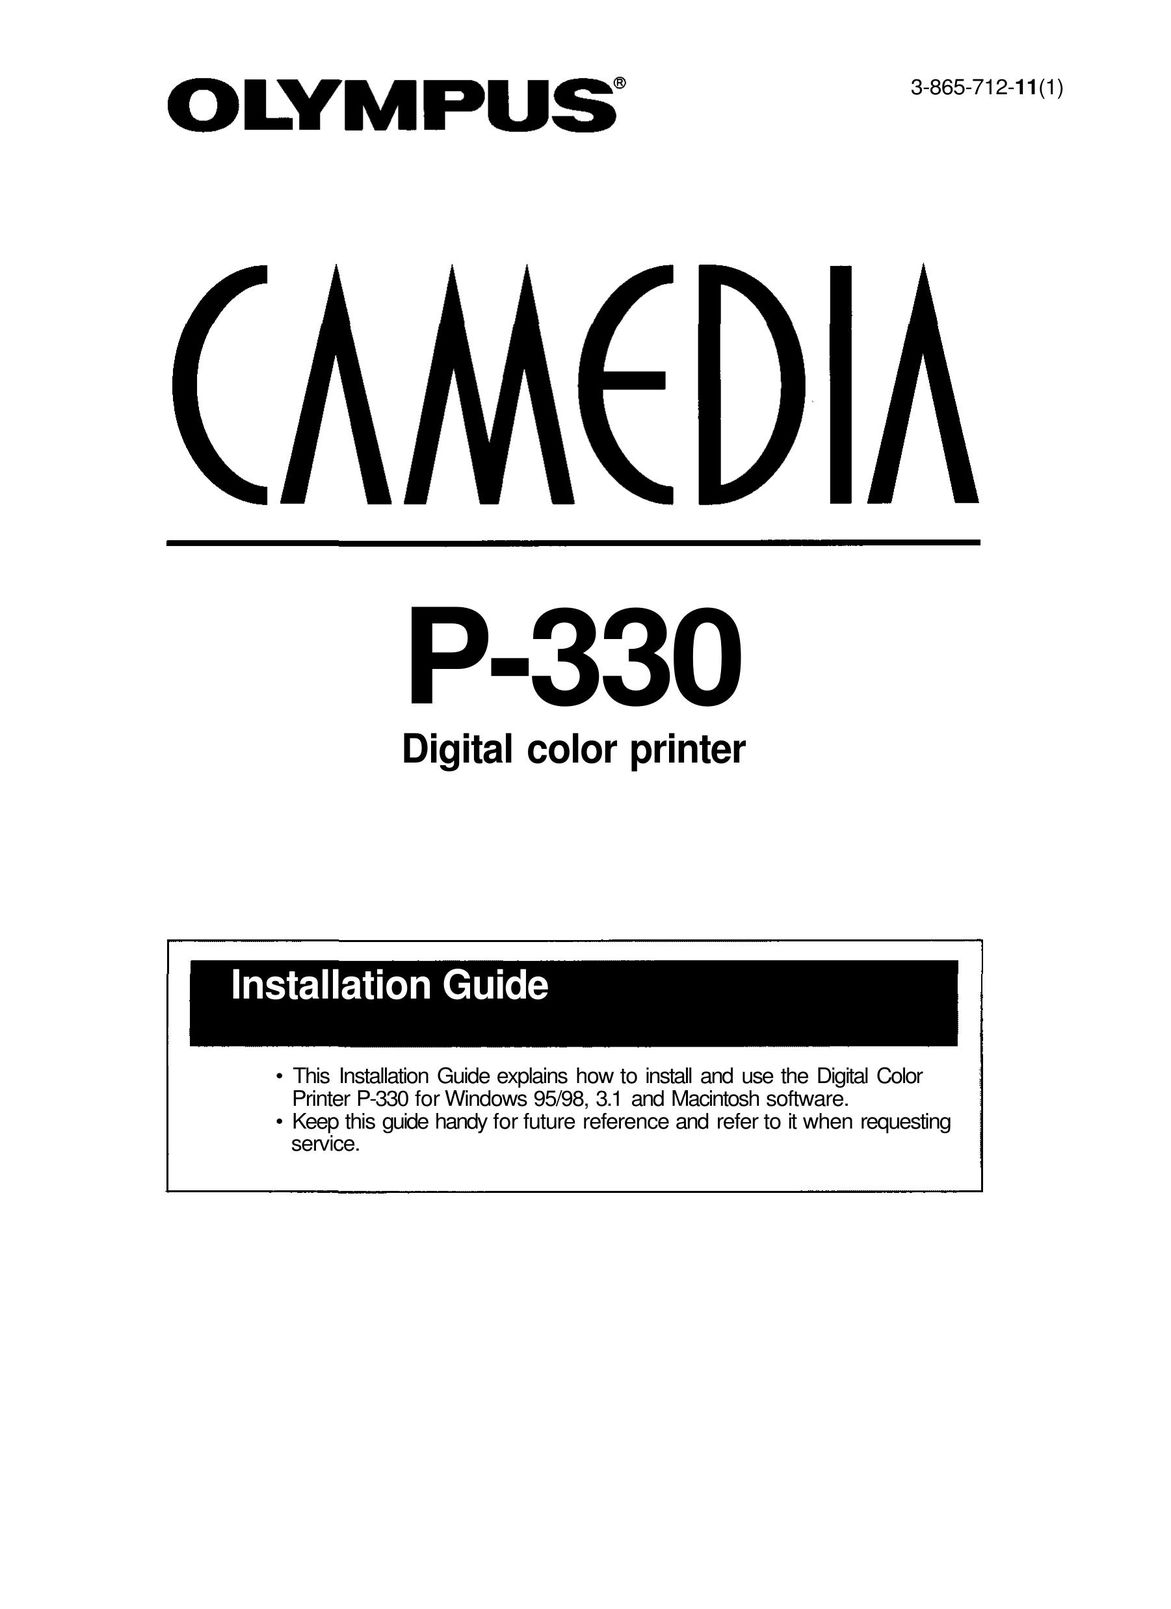 Olympus P-330 Printer User Manual